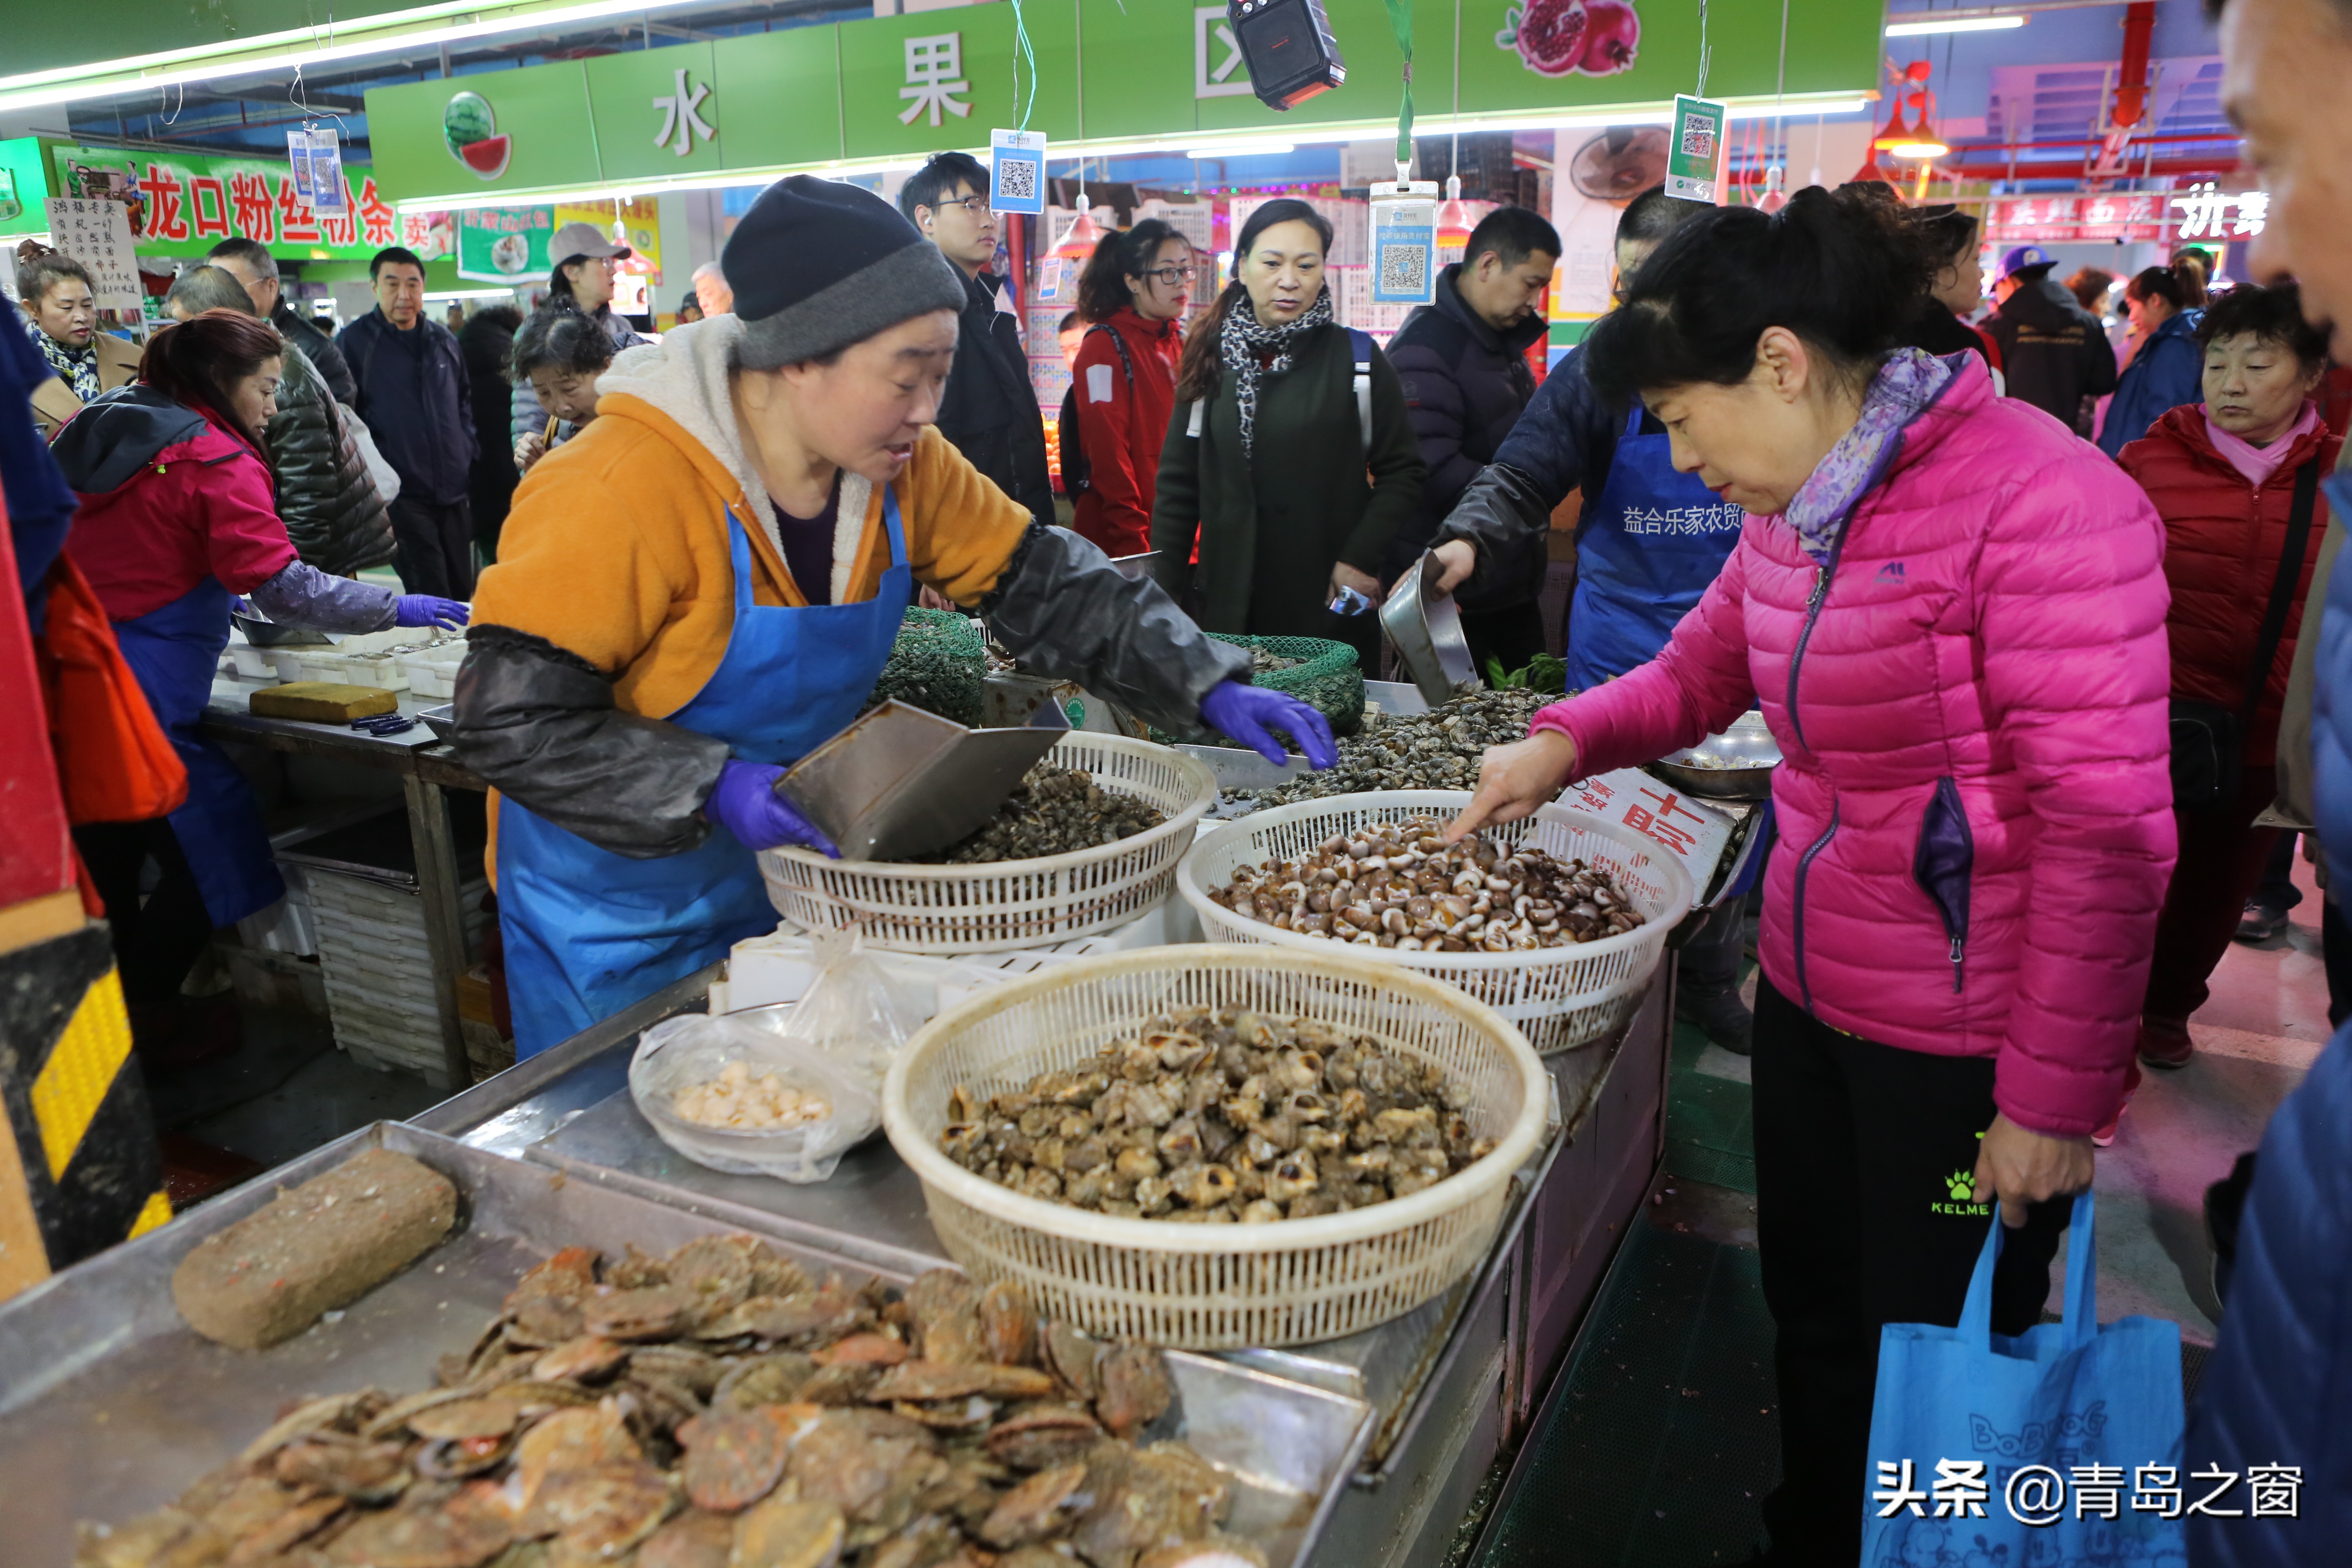 蛏子跌至15元一斤 蛤蜊也降价了 扇贝、海蛎子价格依然坚挺